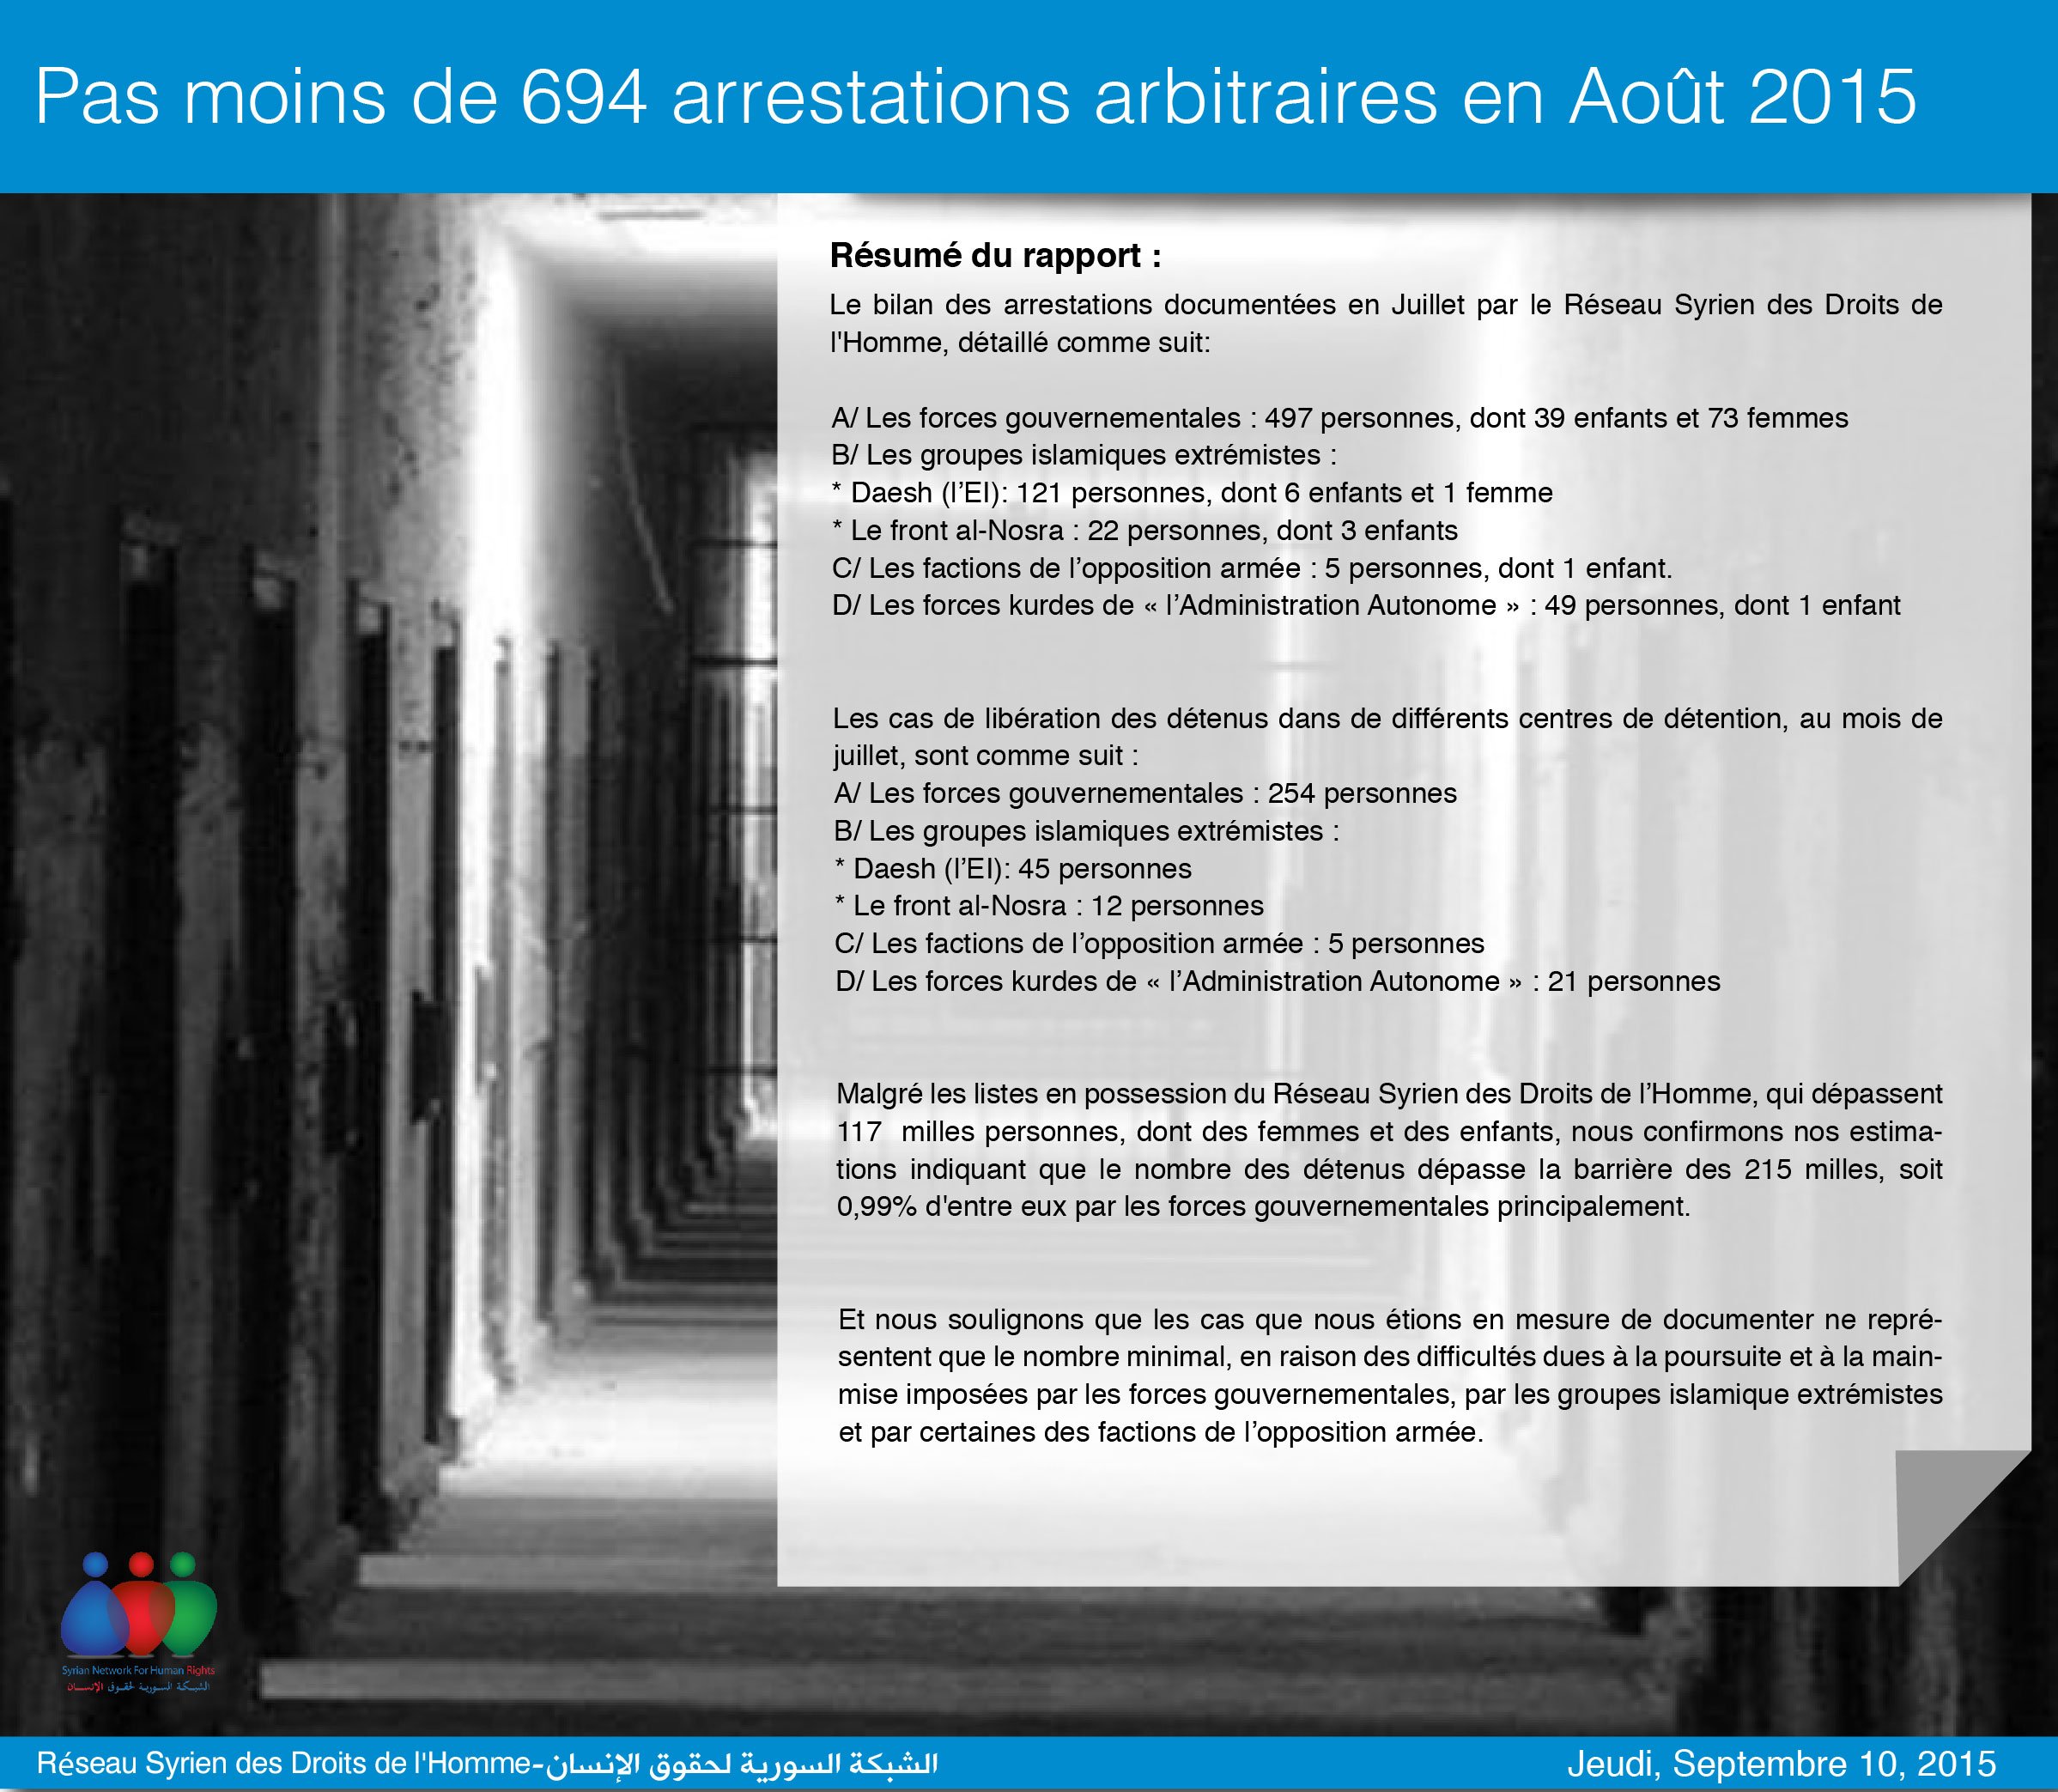 Pas moins de 694 arrestations arbitraires en Août 2015